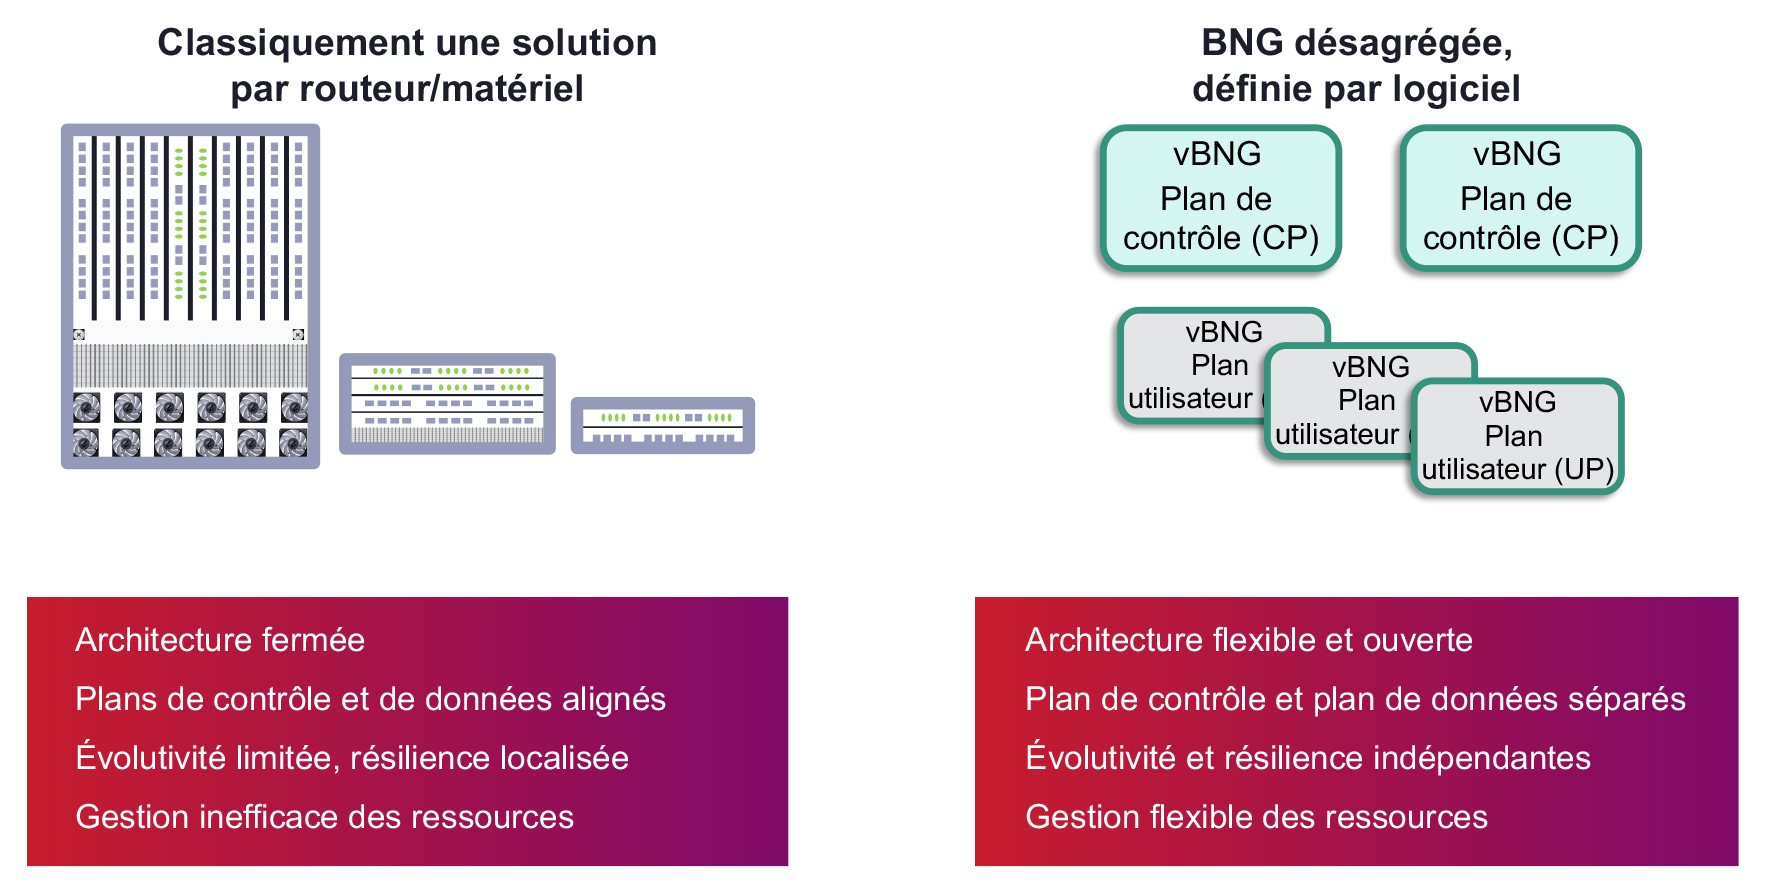 vBNG Figure 2 French translation